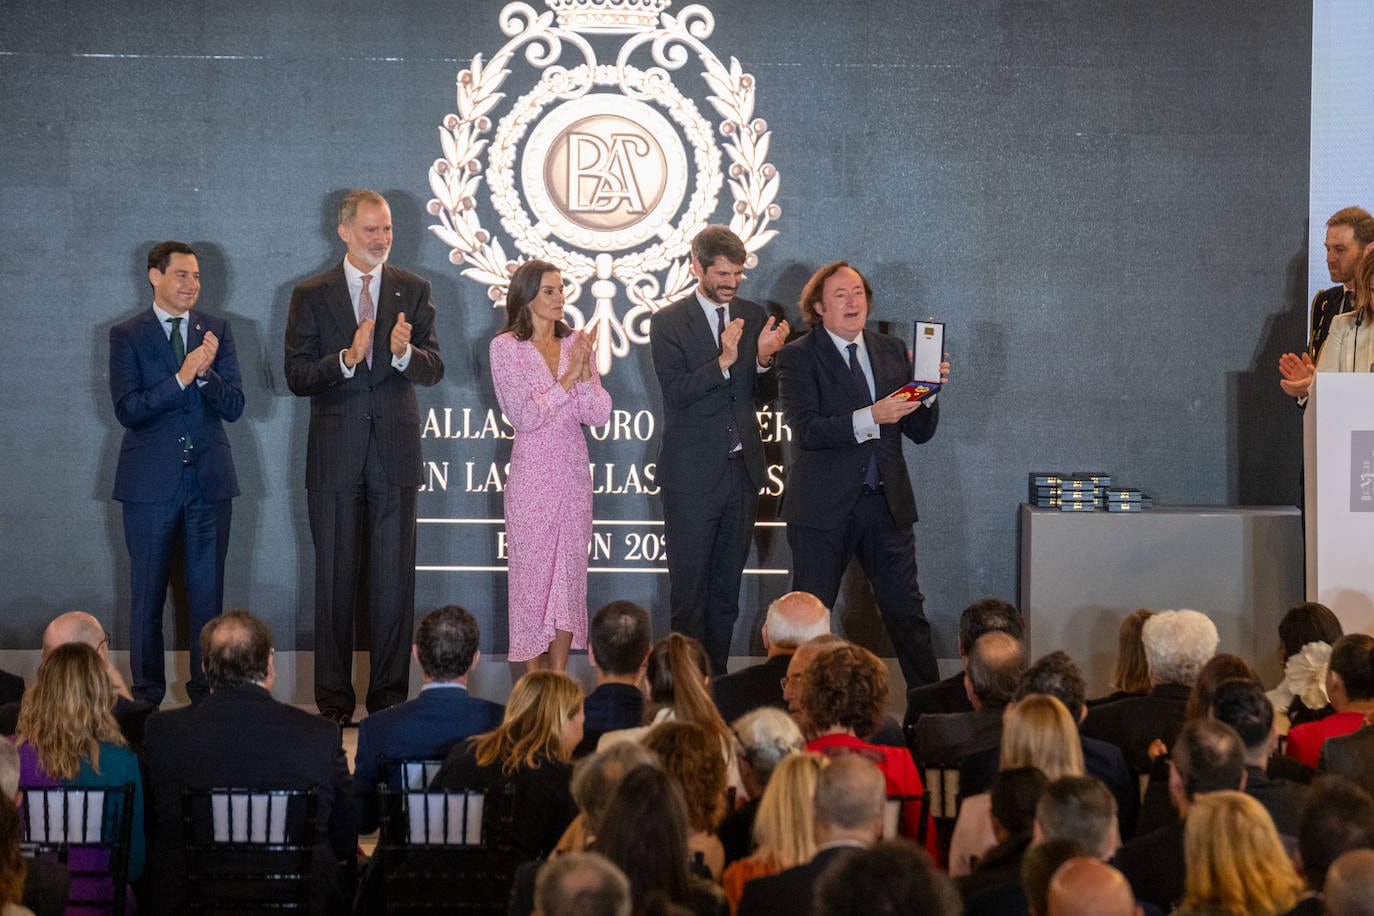 Fotos: los Reyes de España presiden el acto de entrega de las Medallas de Oro al Mérito en las Bellas Artes